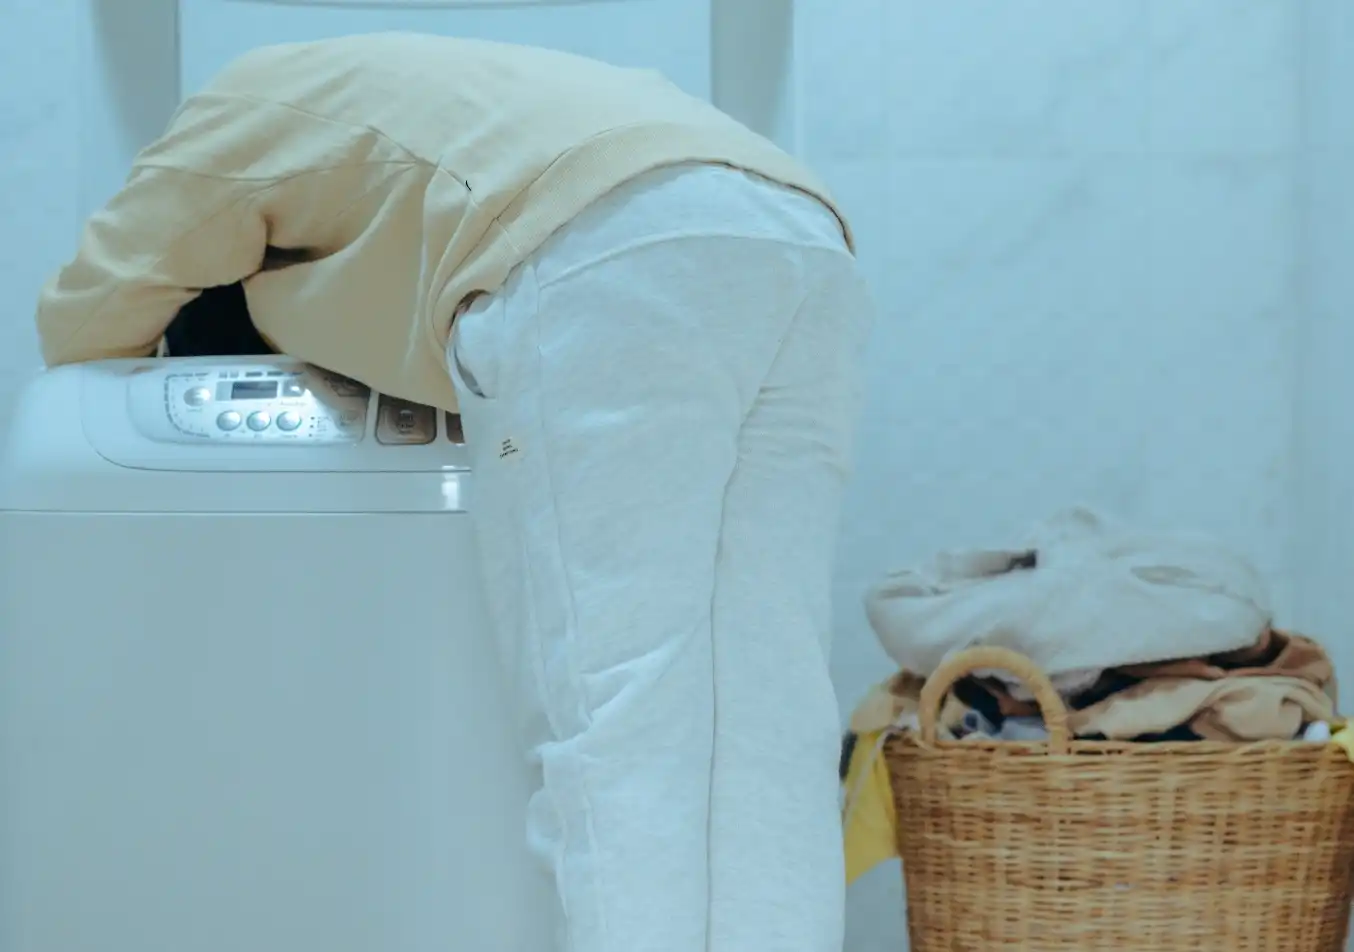 person reaching inside a washing machine